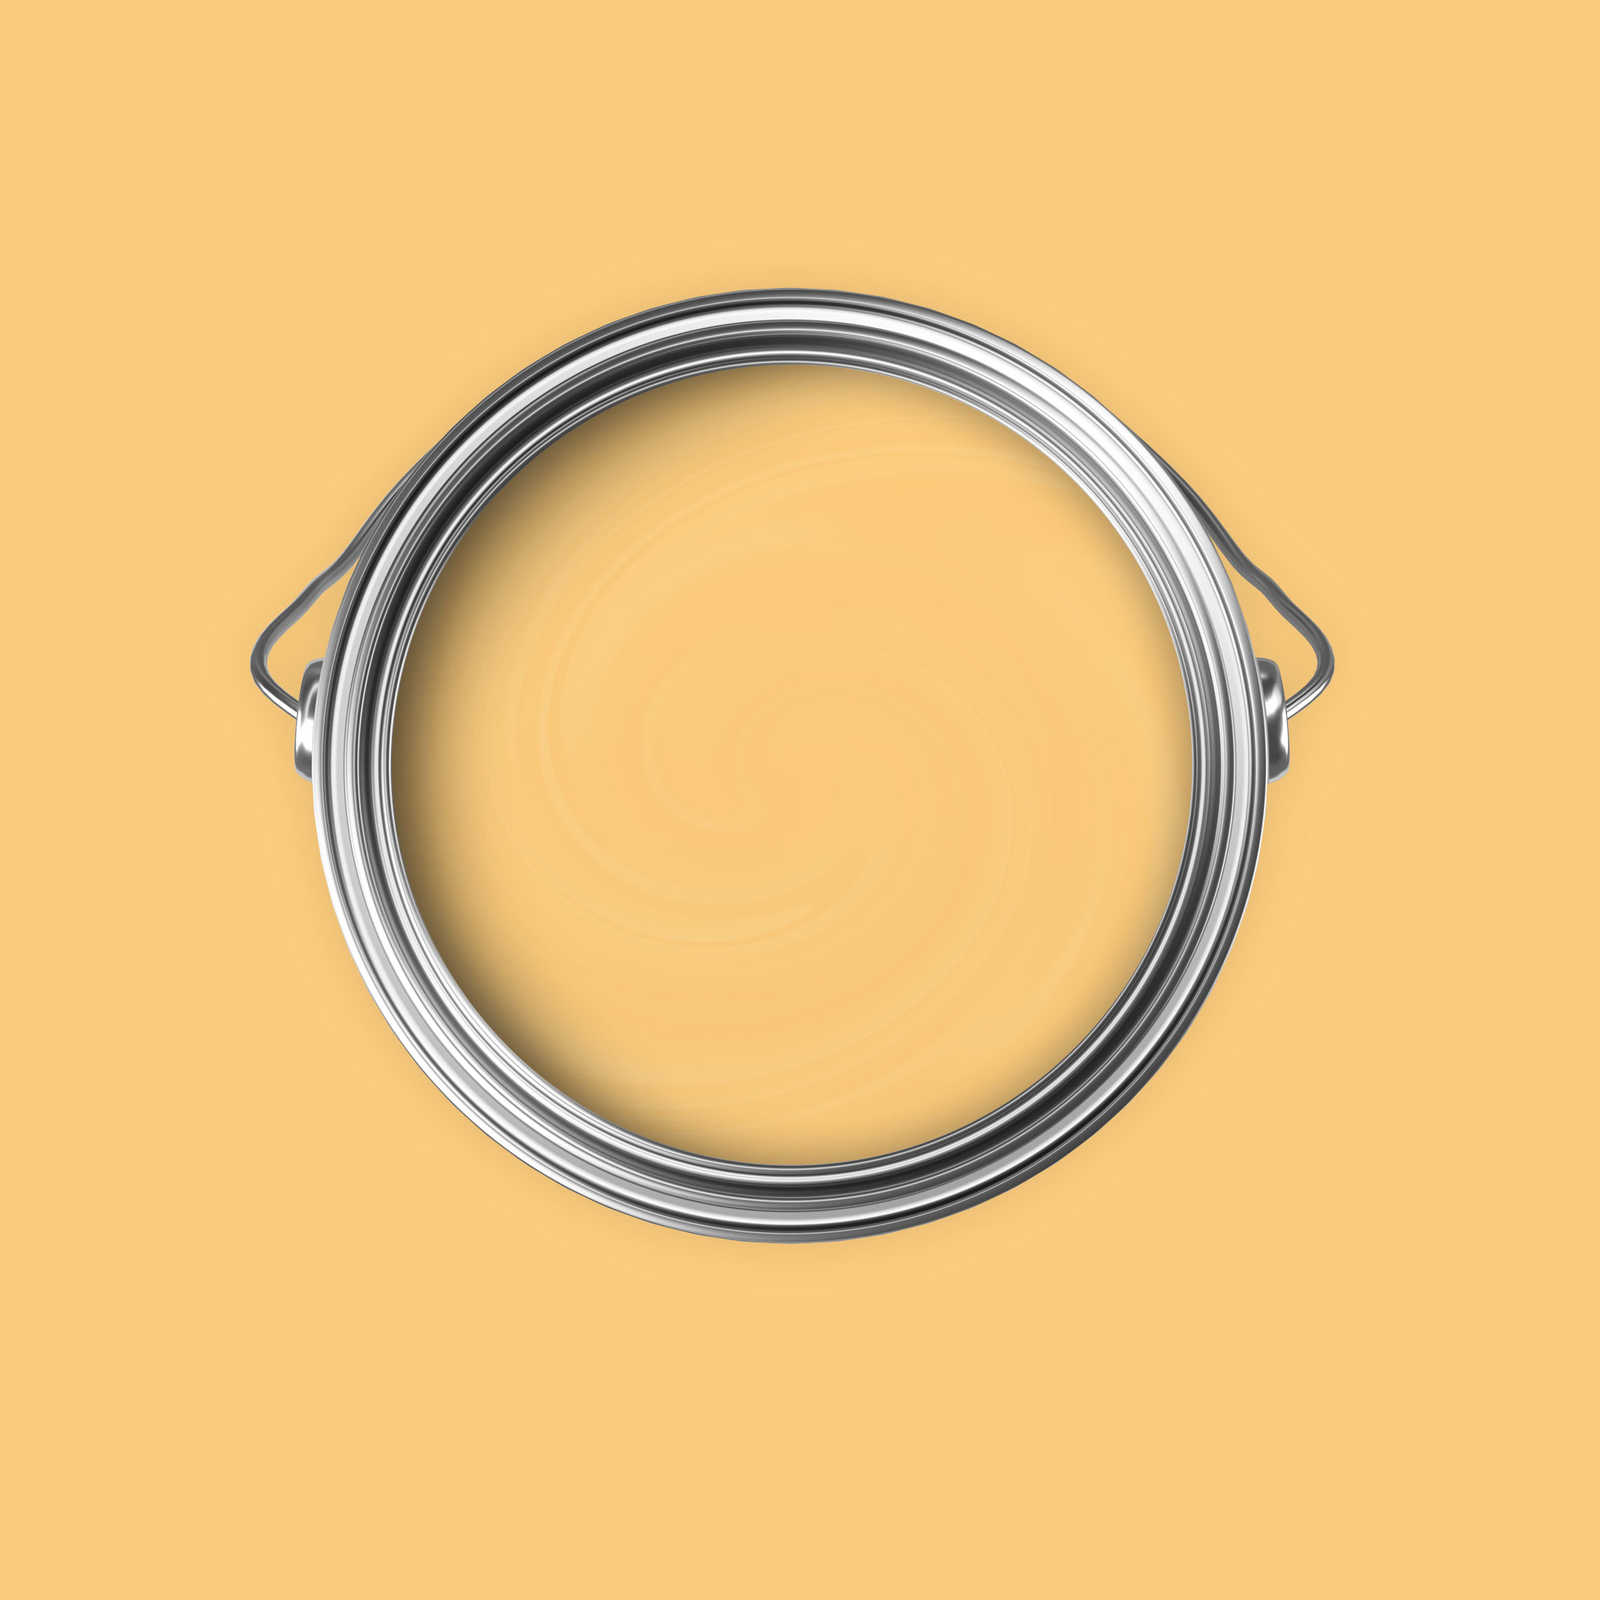             Premium Muurverf vrolijk goud »Juicy Yellow« NW804 – 5 liter
        